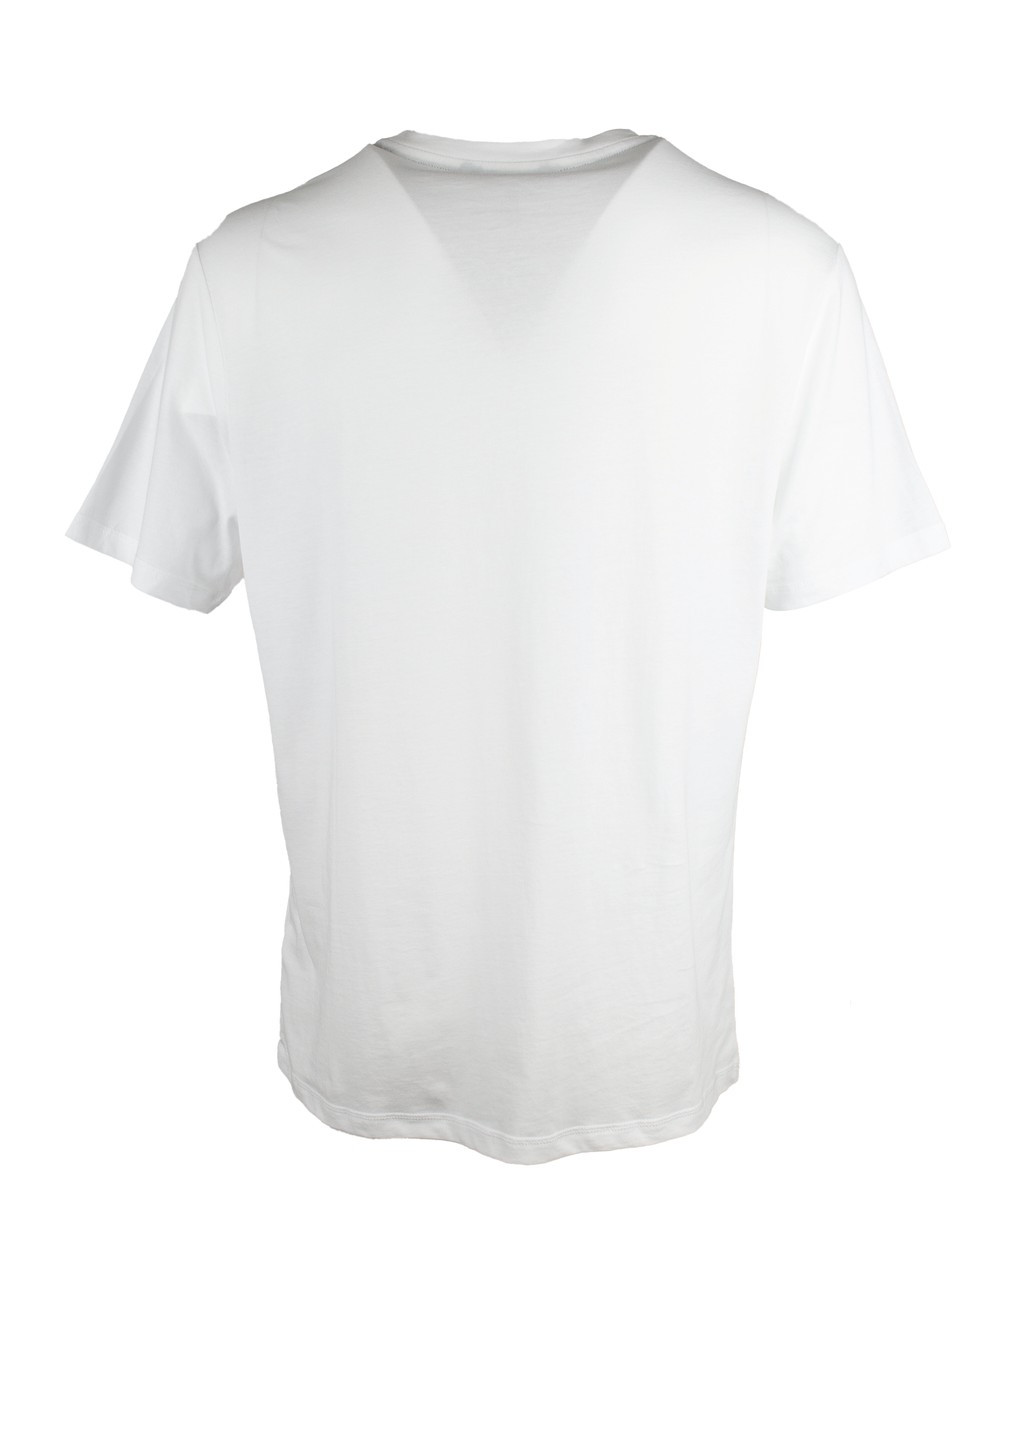 Біла футболка чоловіча біла з принтом umoumo1981ycd Tommy Hilfiger